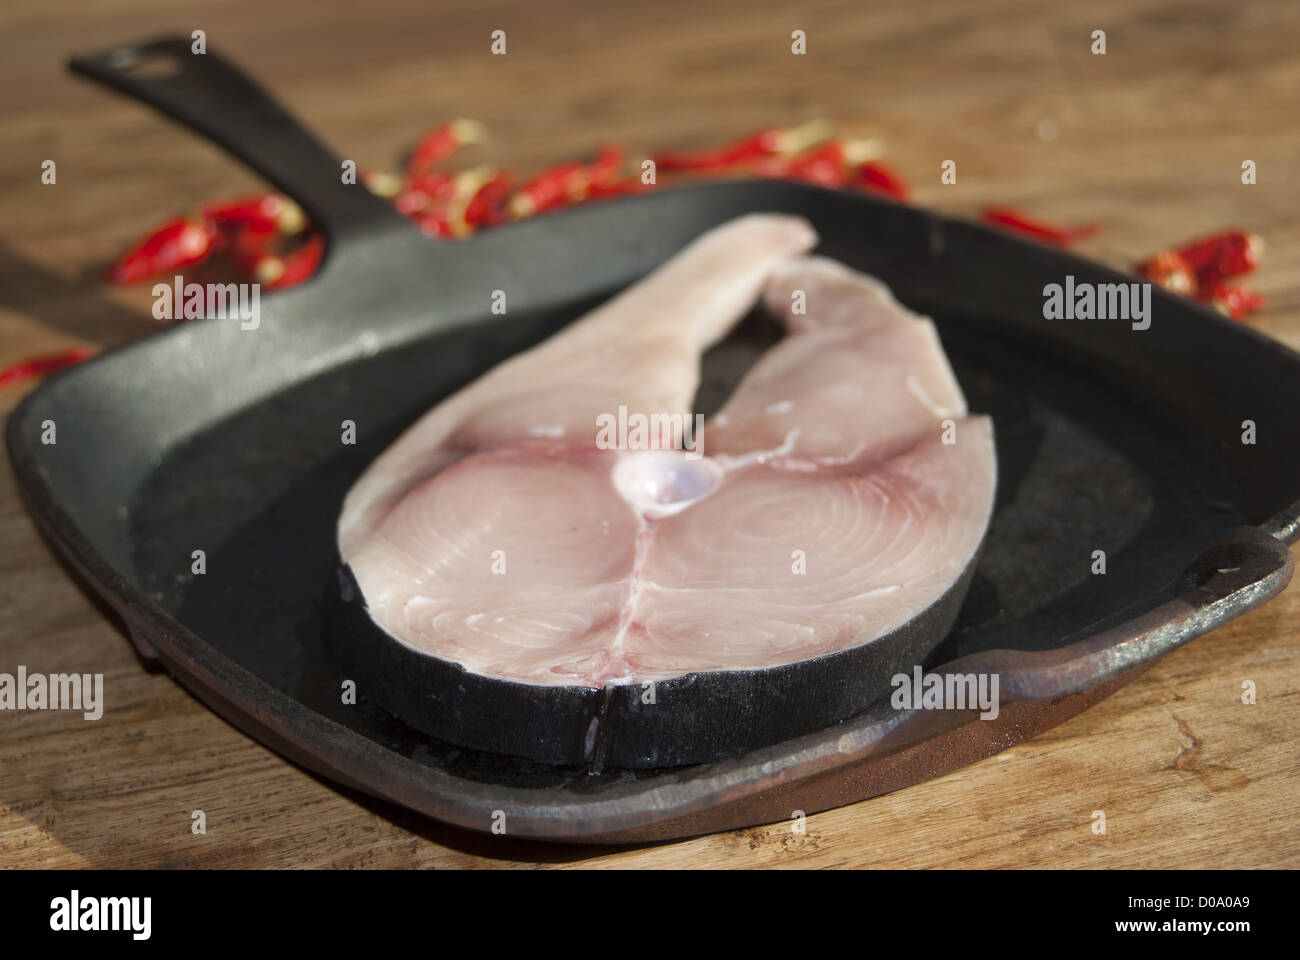 Espadon grillé : l'espadon est un poisson typique de l'alimentation méditerranéenne Banque D'Images